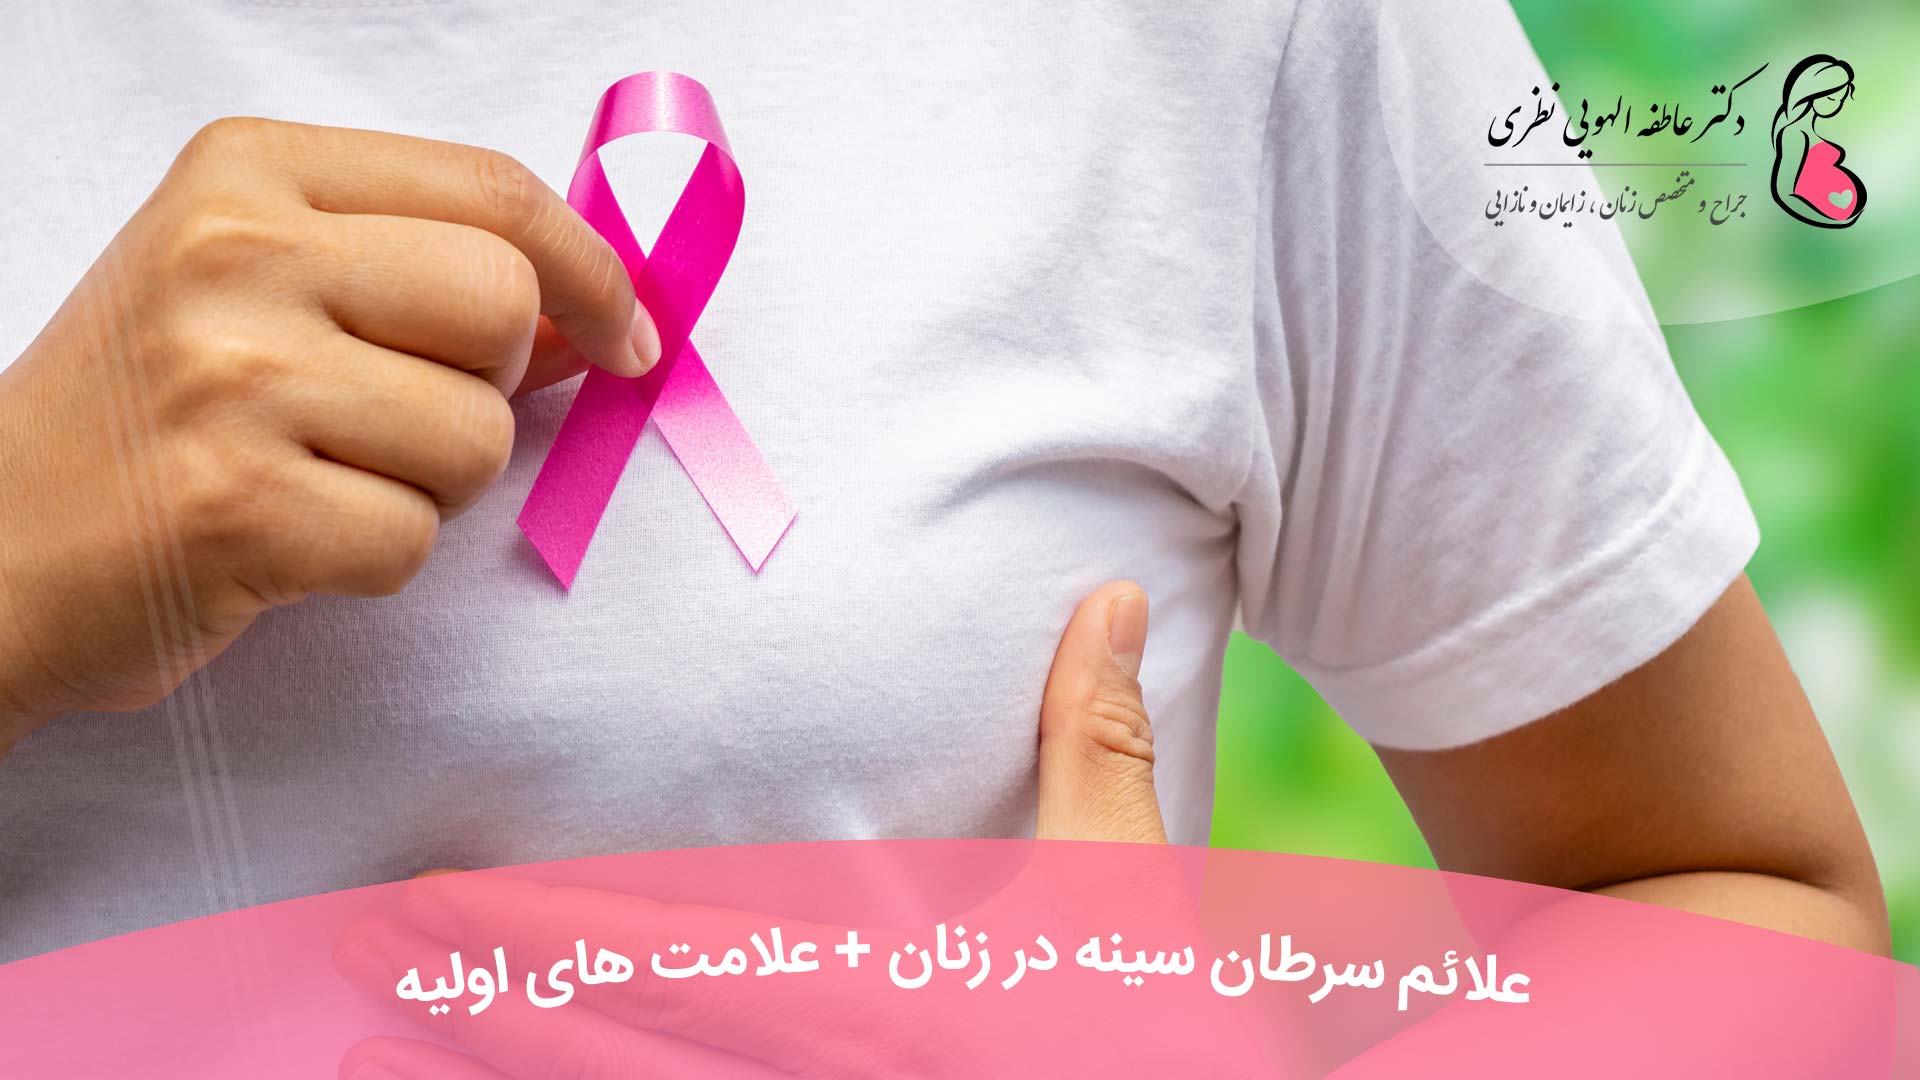 علائم سرطان سینه در زنان + علامت های اولیه